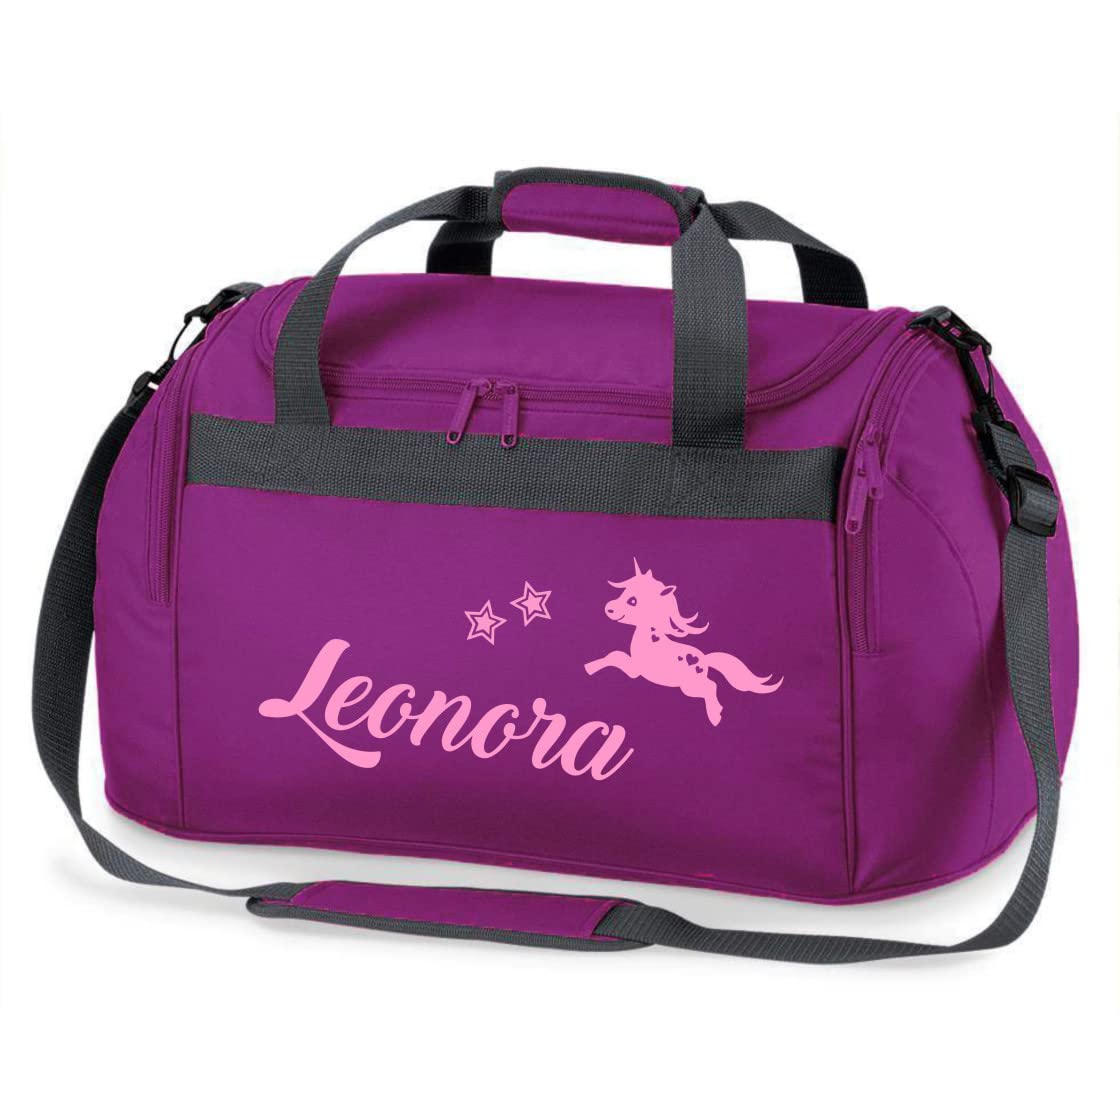 Sporttasche Mädchen mit Namen |springendes Einhorn und Sterne | Personalisierbare und Bedruckte Reisetasche Duffle Weekender Bag (lila)